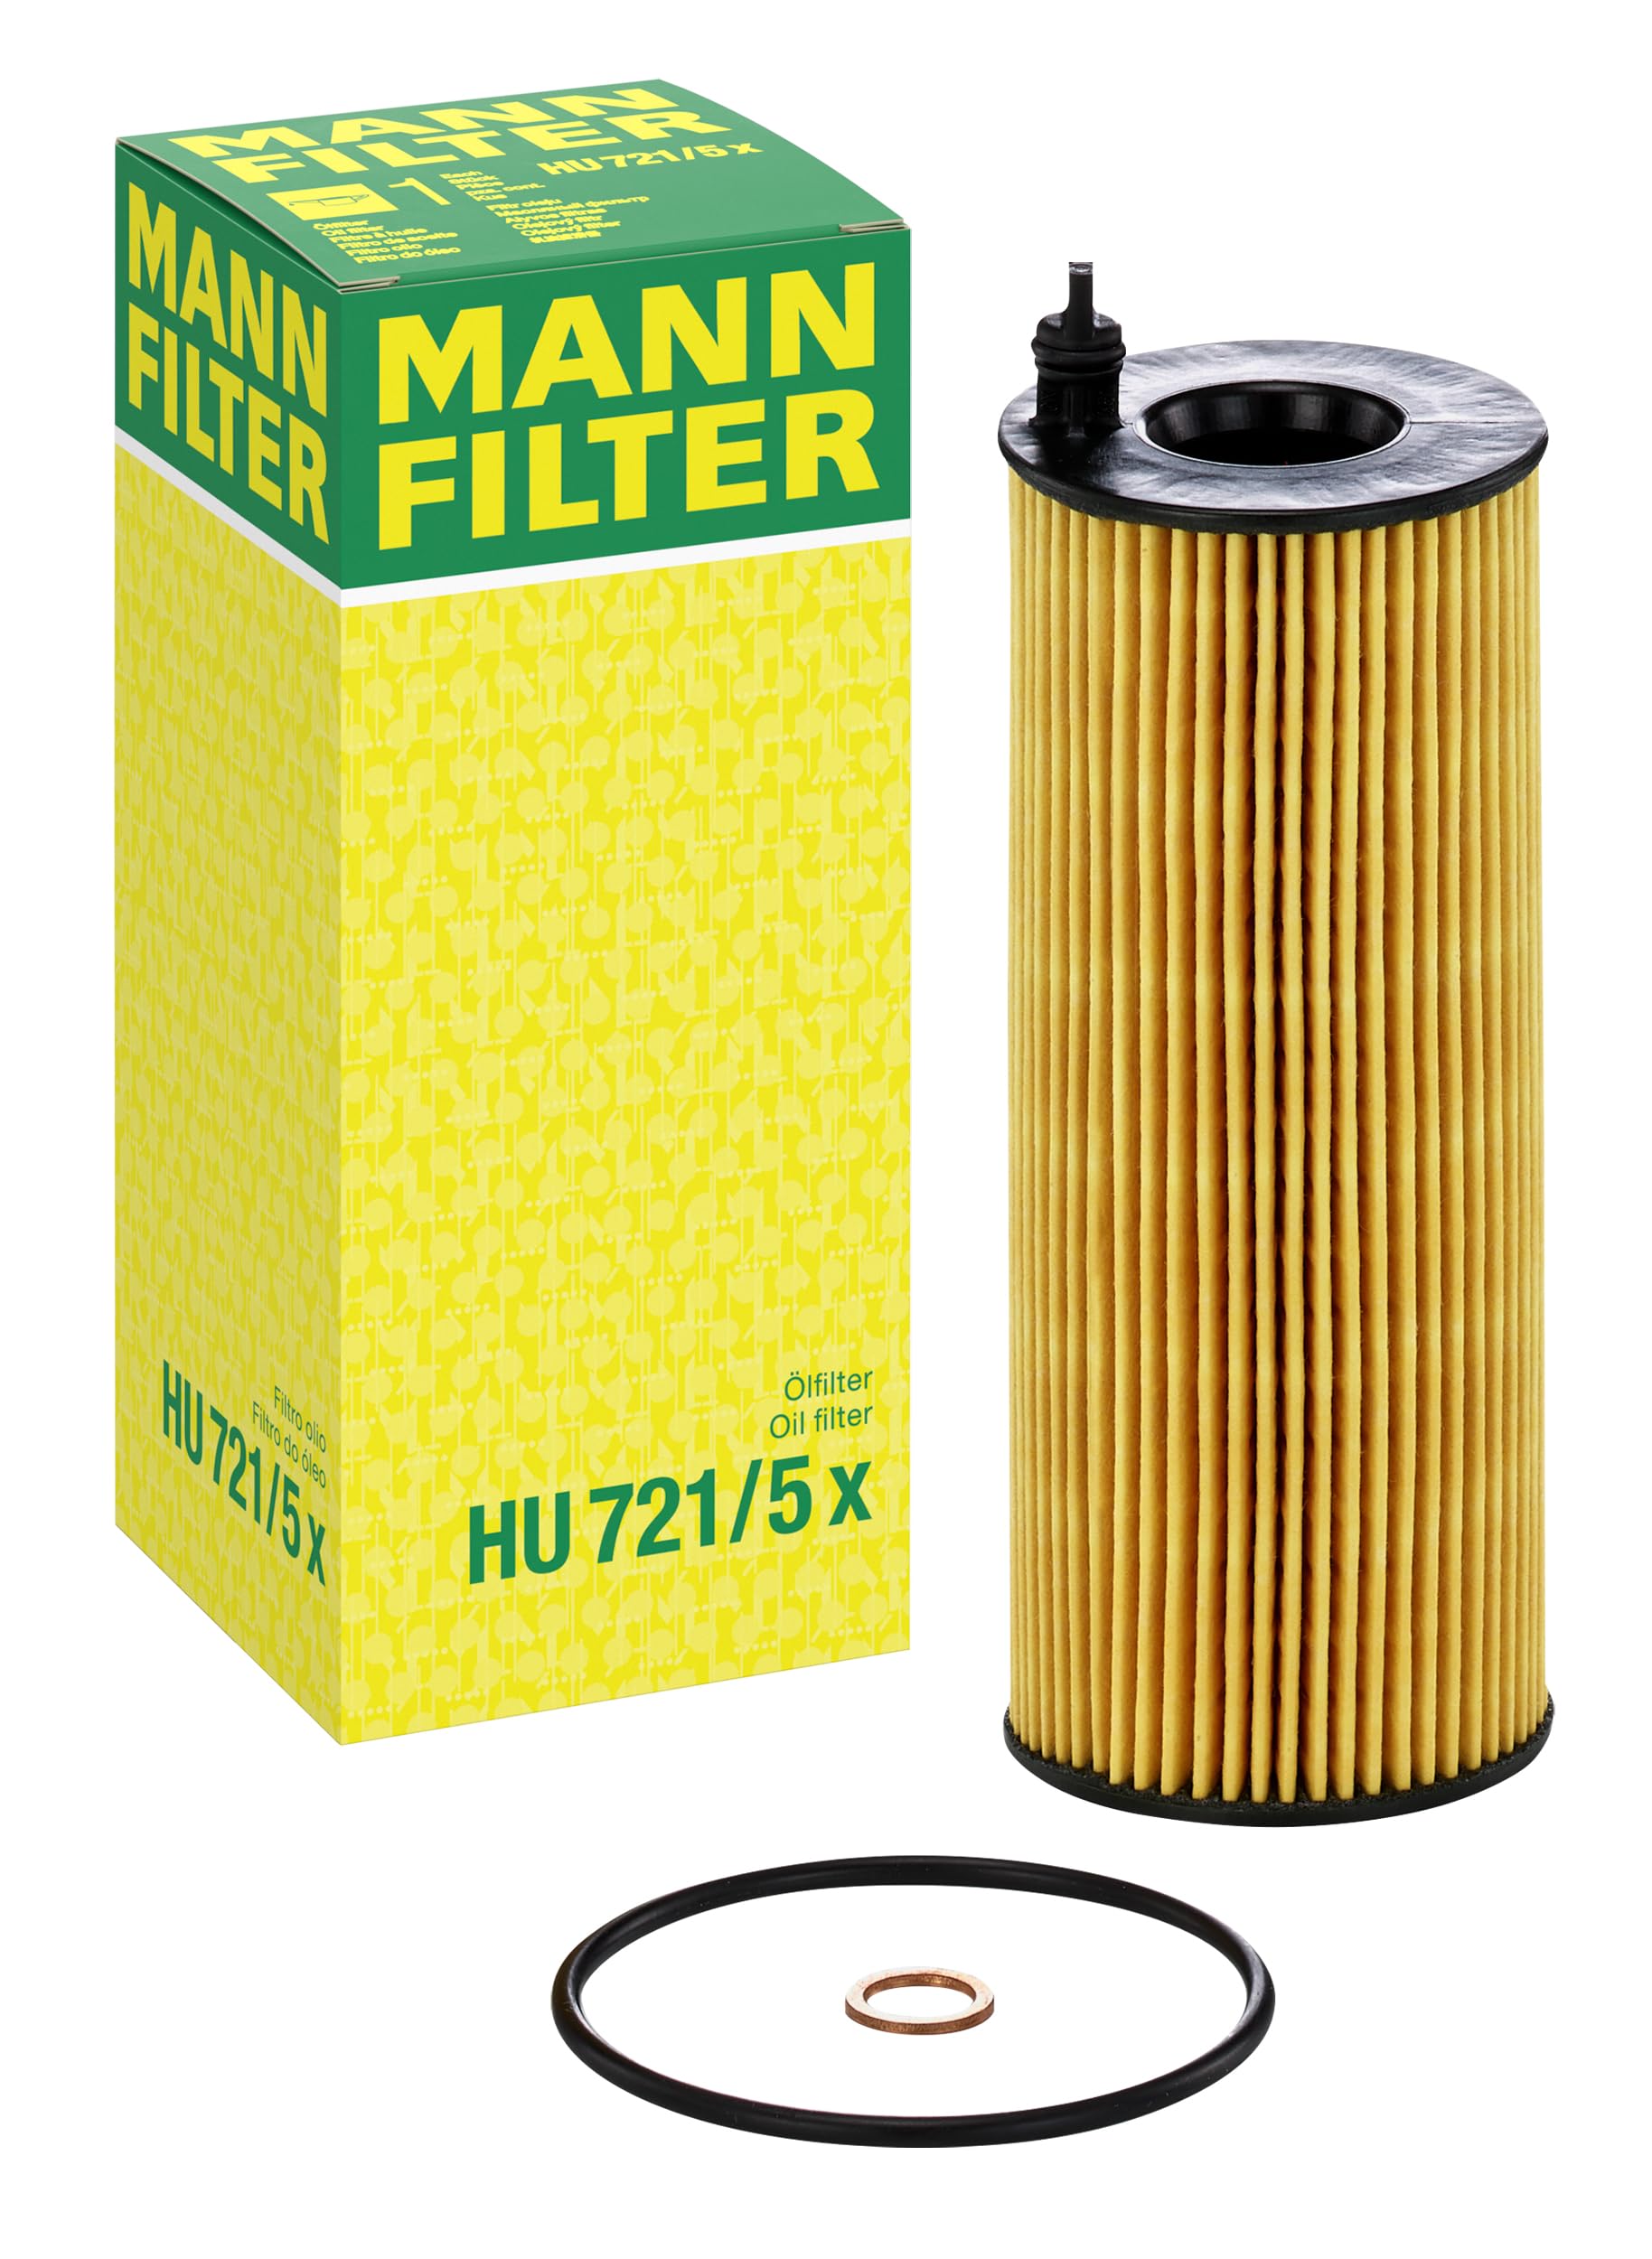 MANN-FILTER HU 721/5 X Ölfilter – Ölfilter Satz mit Dichtung / Dichtungssatz – Für PKW von MANN-FILTER